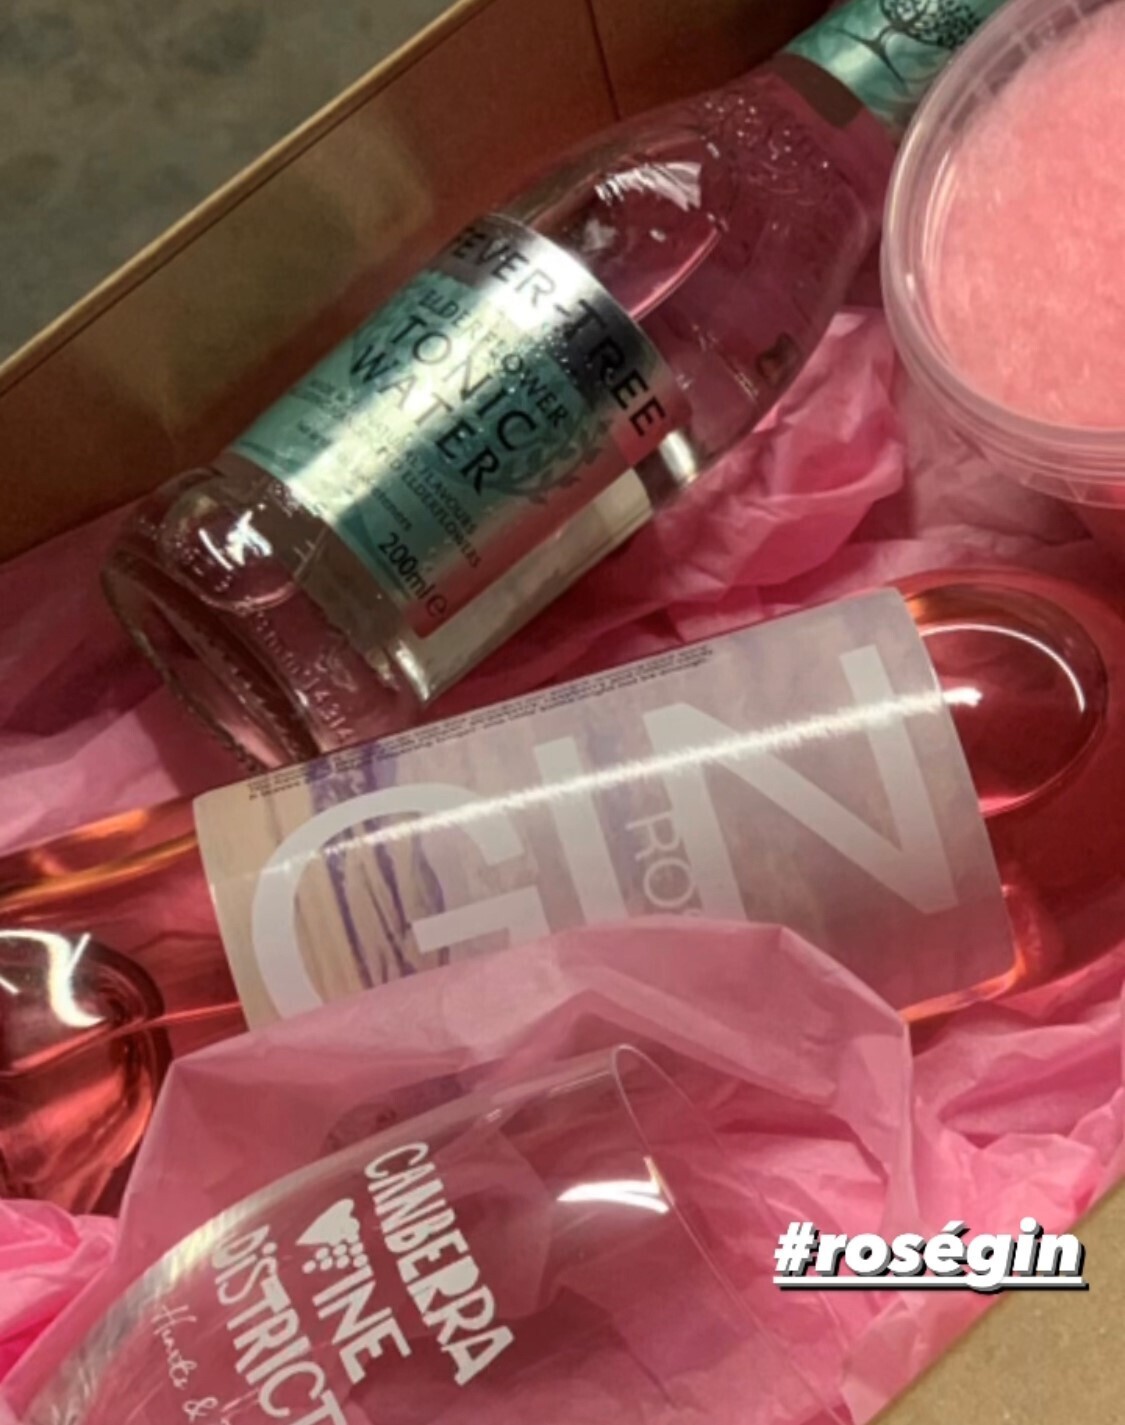 Rosè Gin Packs